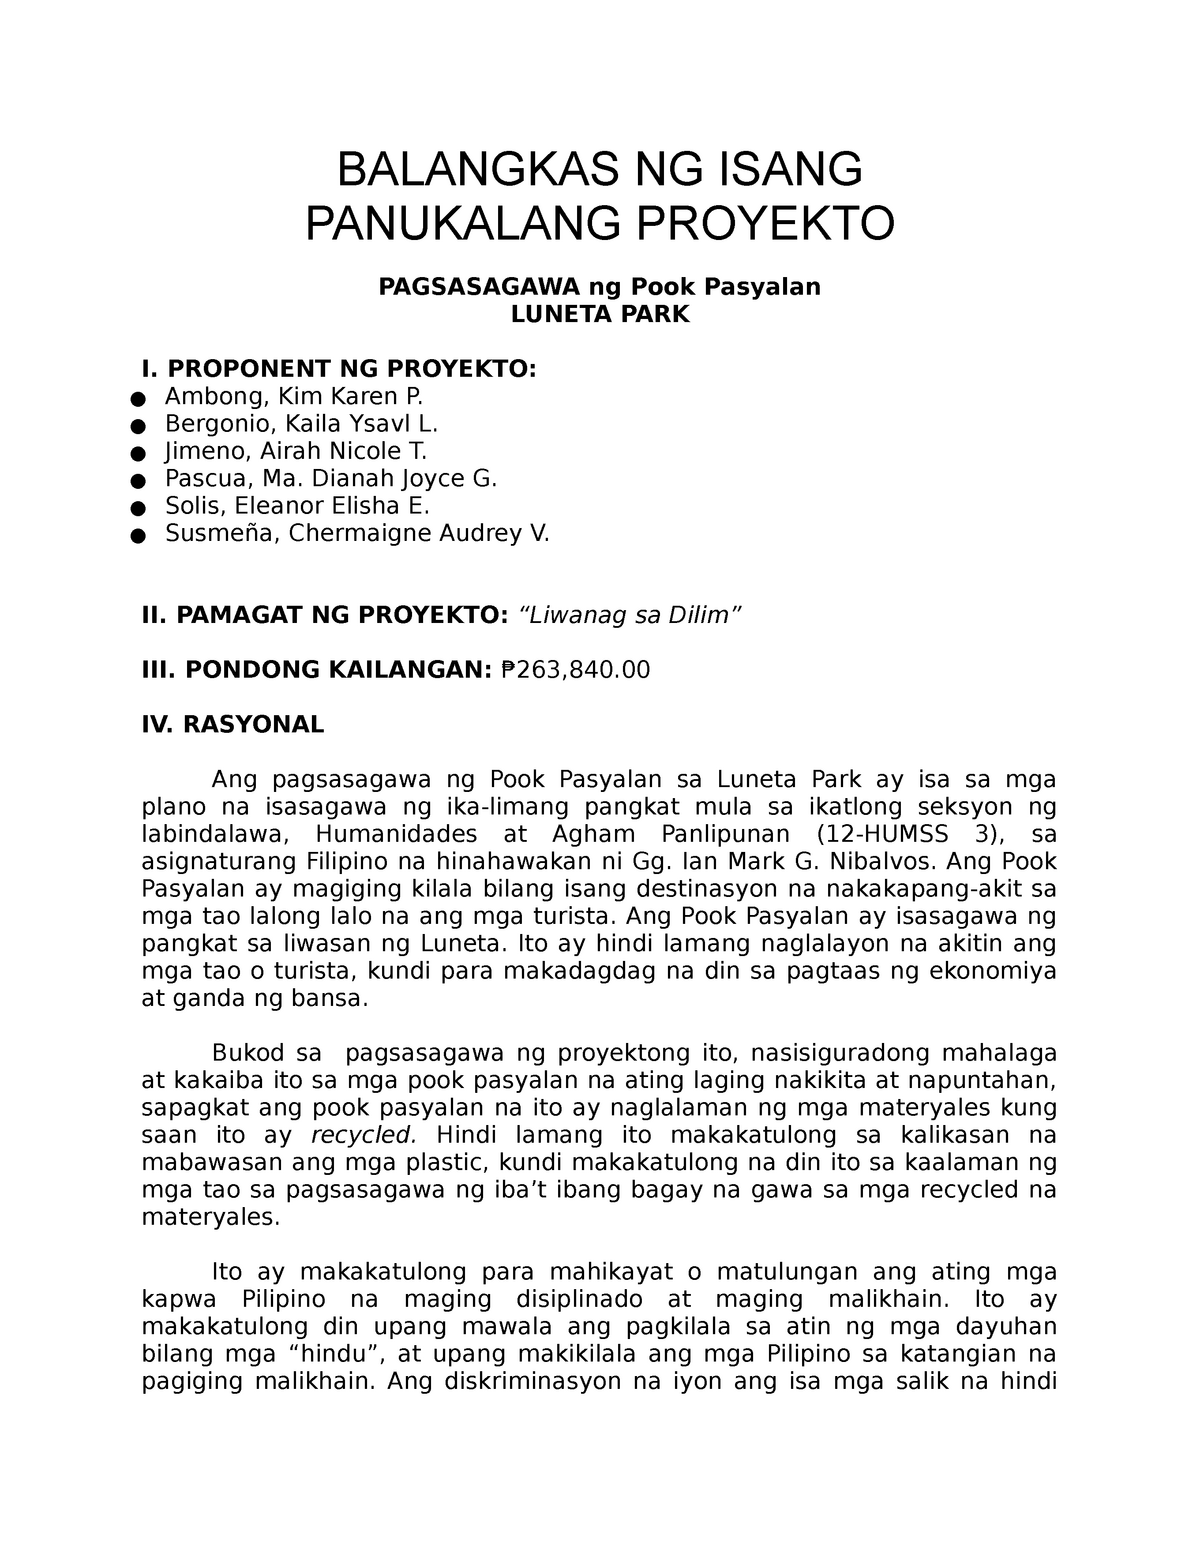 Halimbawa Ng Kasunduan Legal / Ang kailangan ng kuwentong ito'y maipadama sa mambabasa ang ...